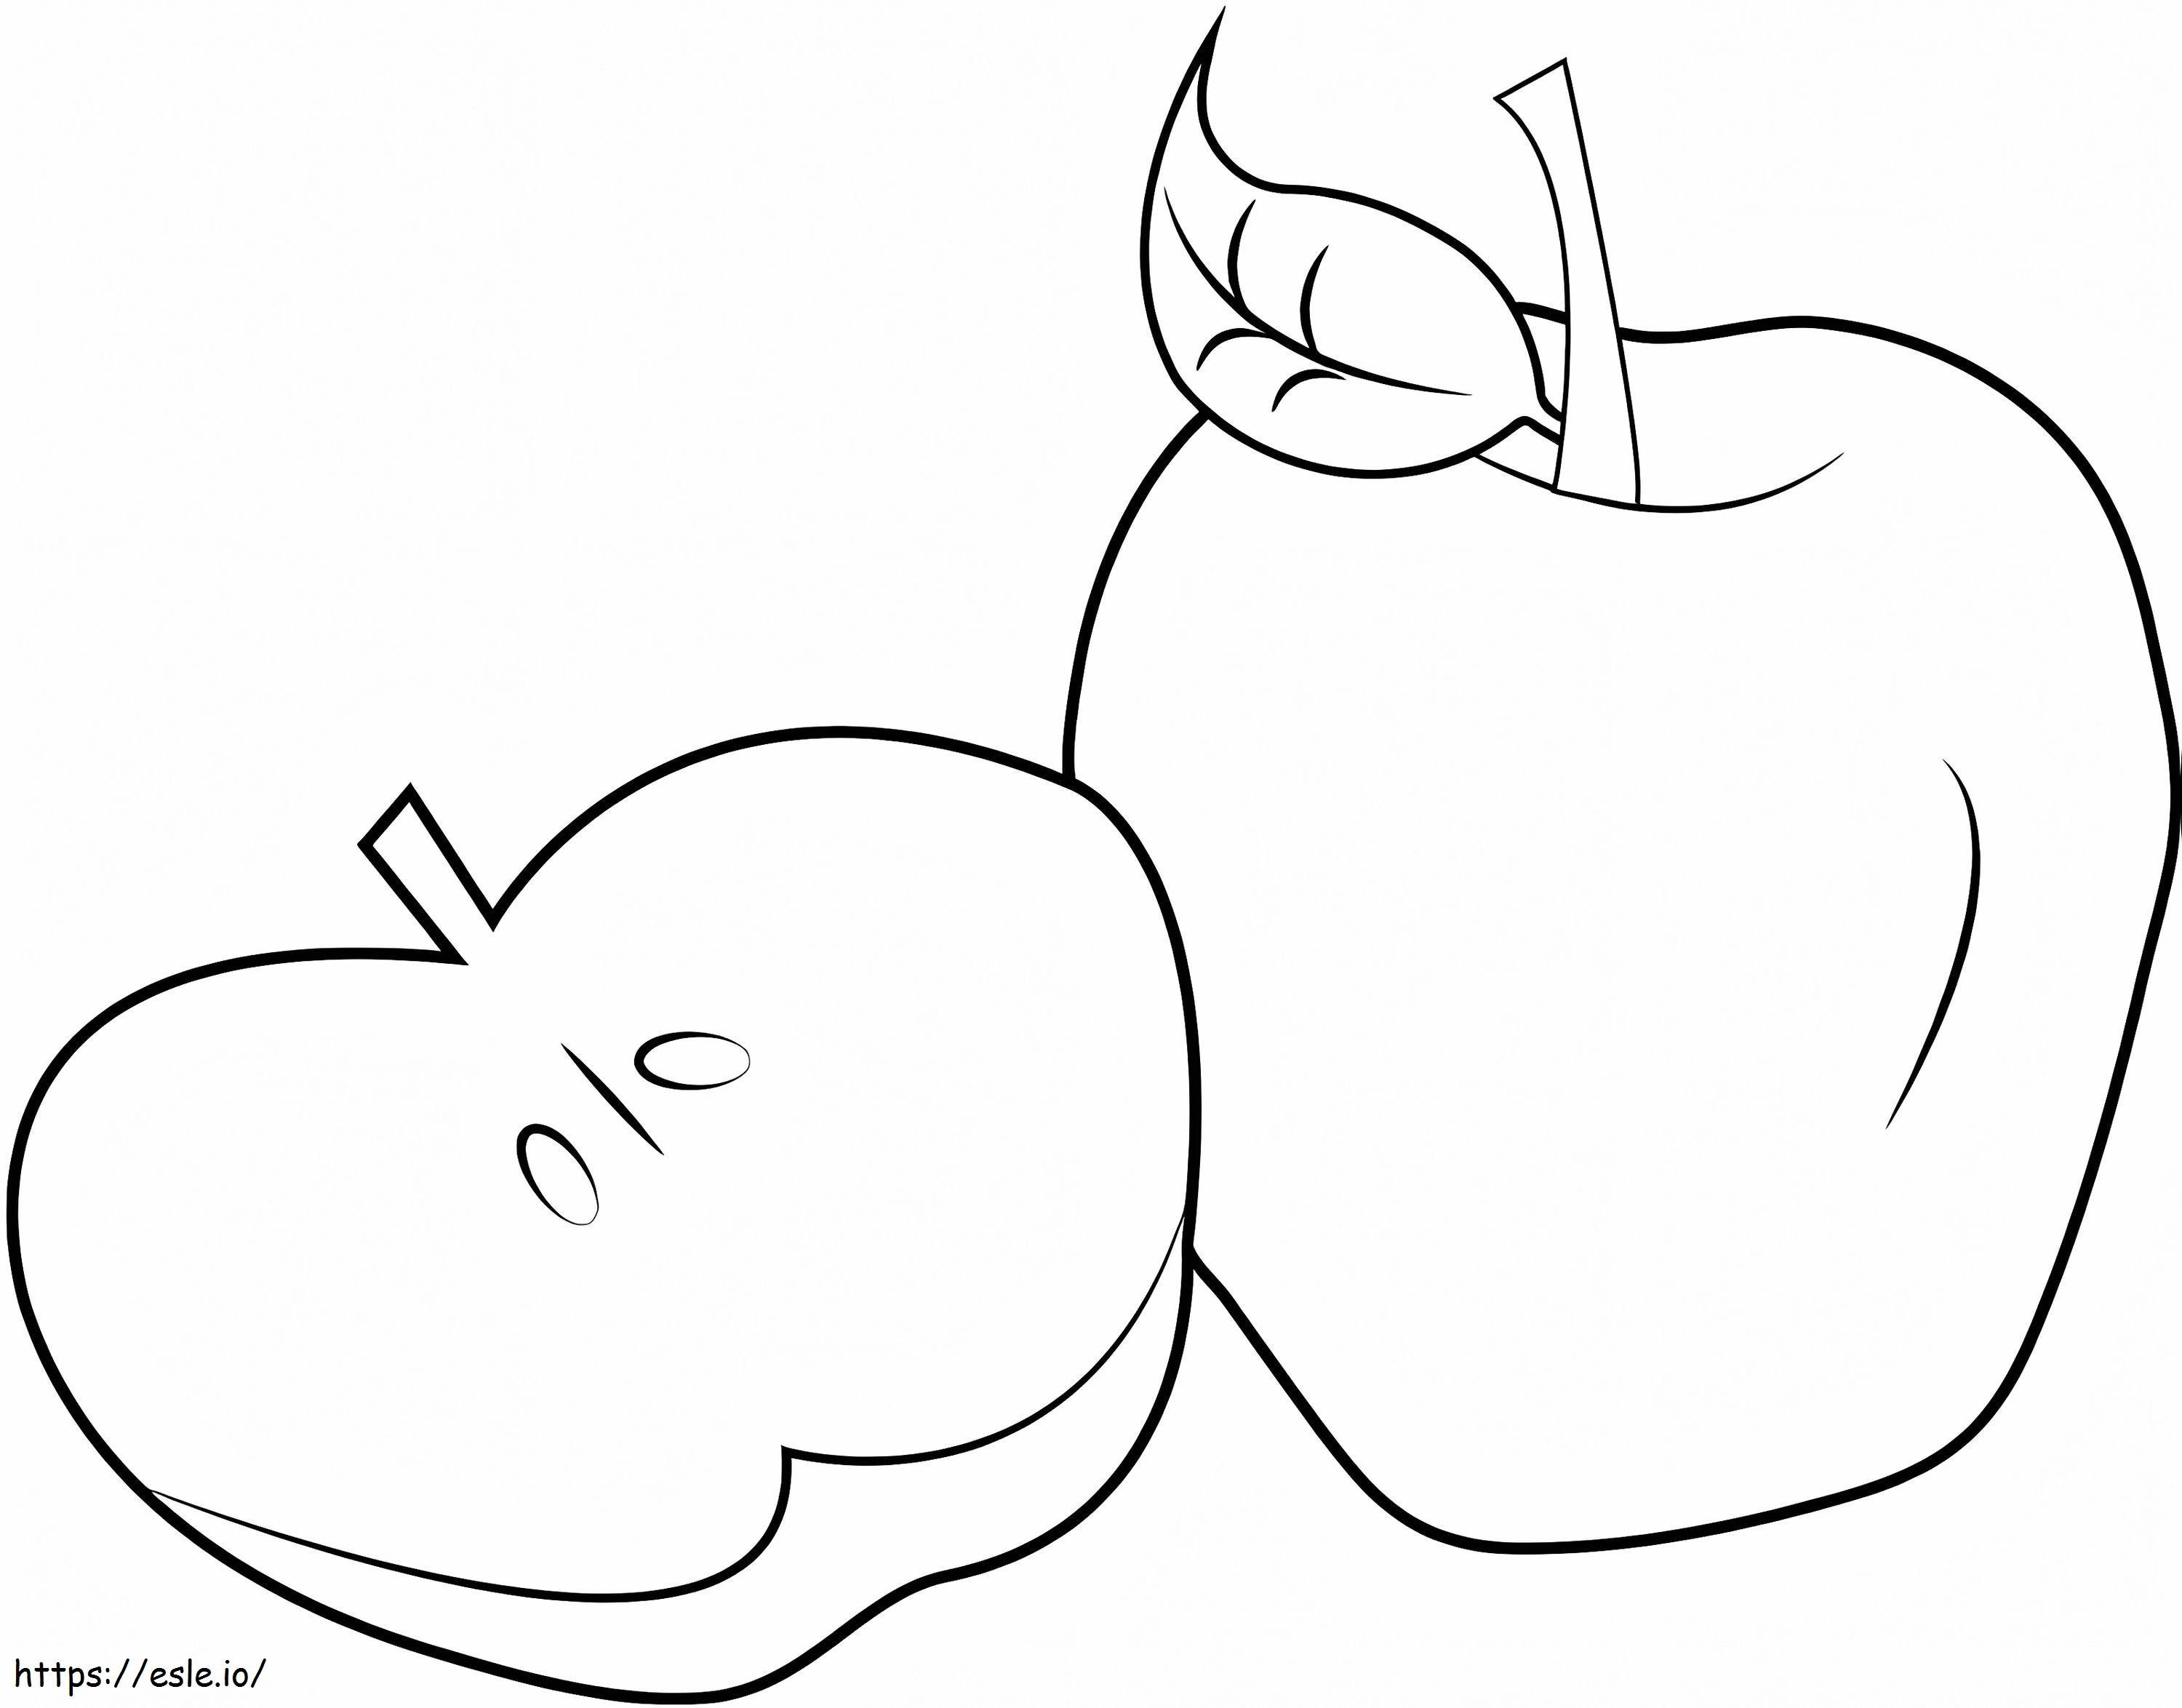 Măr feliat și un măr de colorat